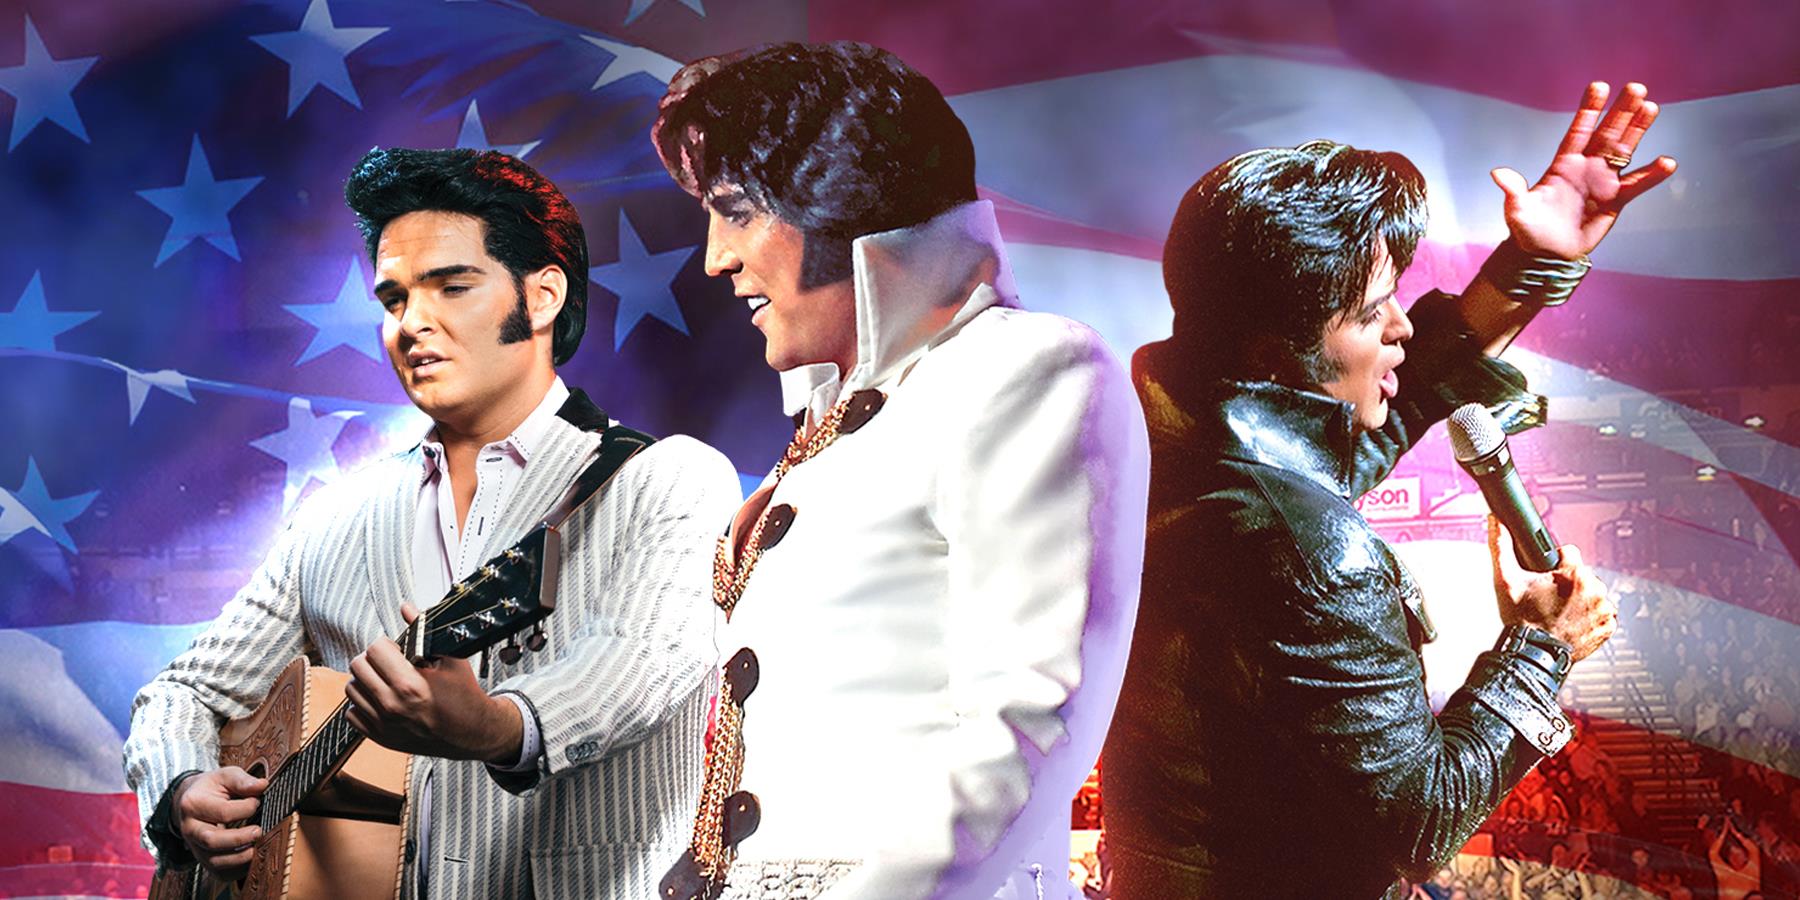 Three men dressed as Elvis